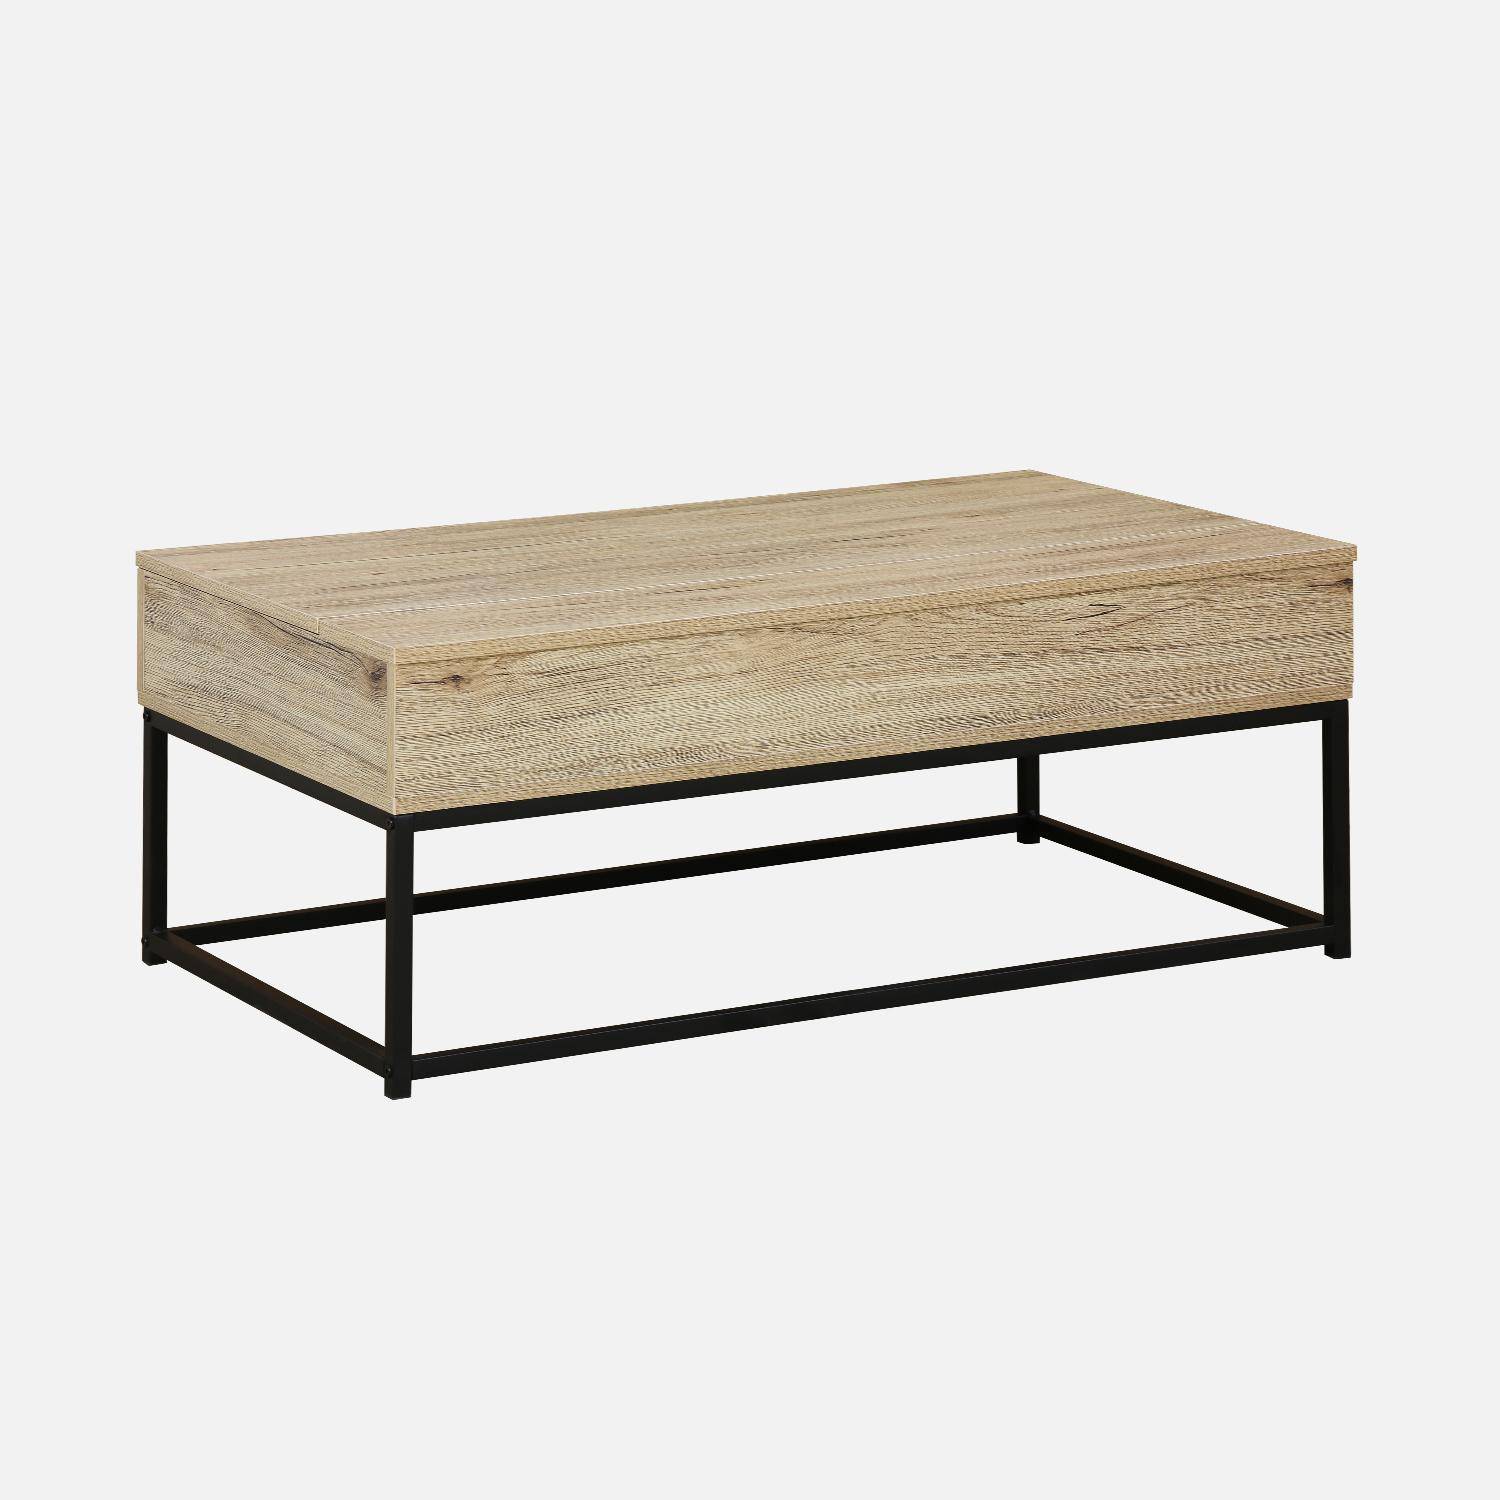 Table basse, loft, 1 plateau relevable, deux espaces de rangement, L 100 cm x l 55 cm x H 40,5 cm Photo4